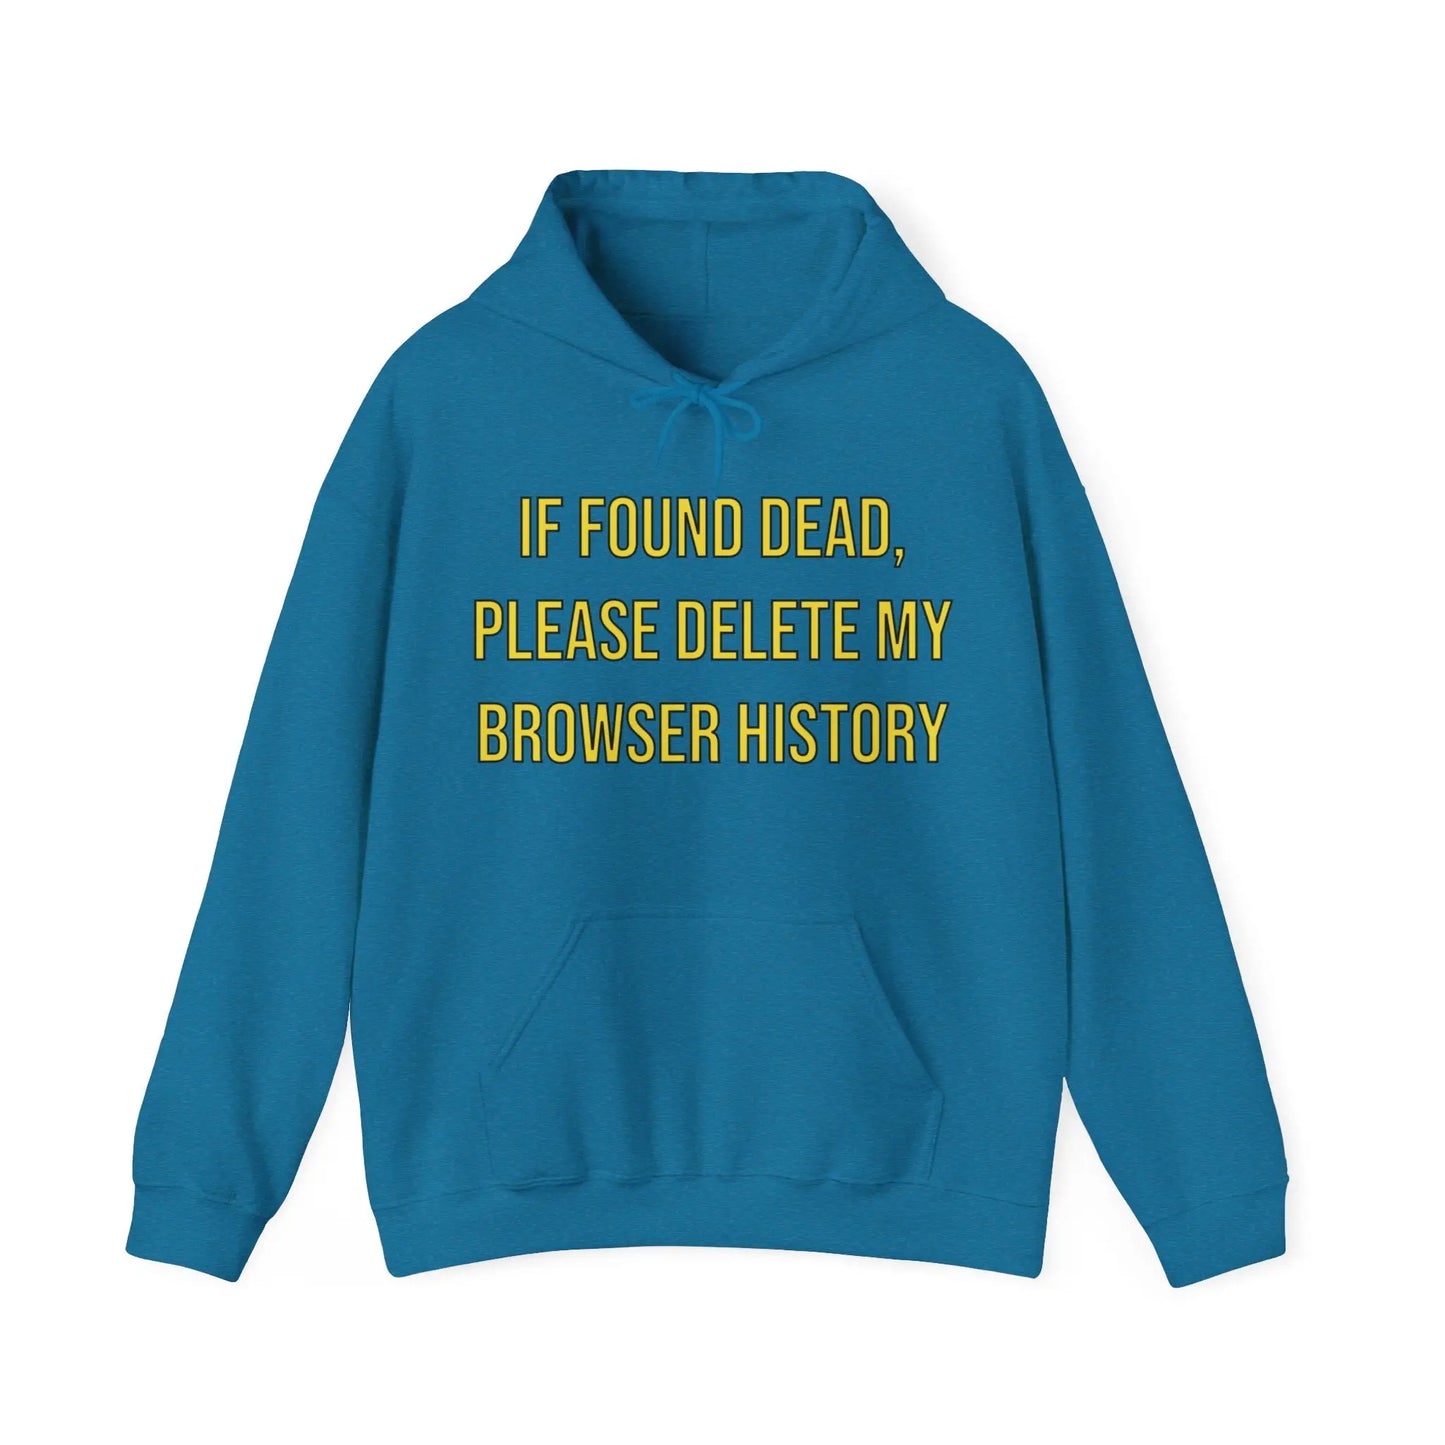 Browser History Men's Hooded Sweatshirt - Wicked Tees